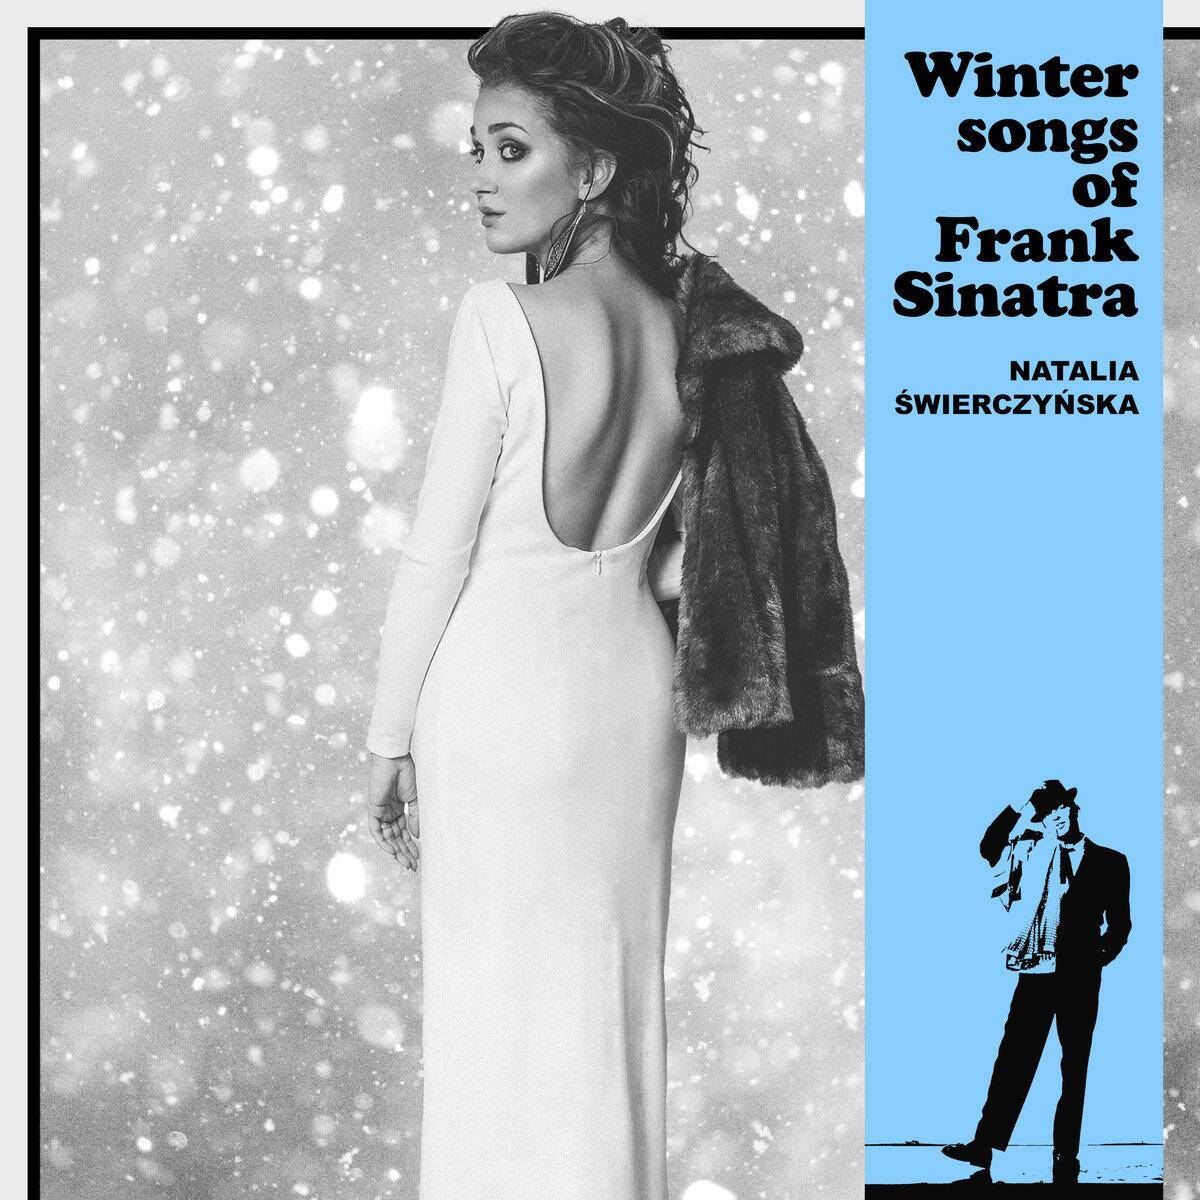 WInter songs of Frank Sinatra (CD)